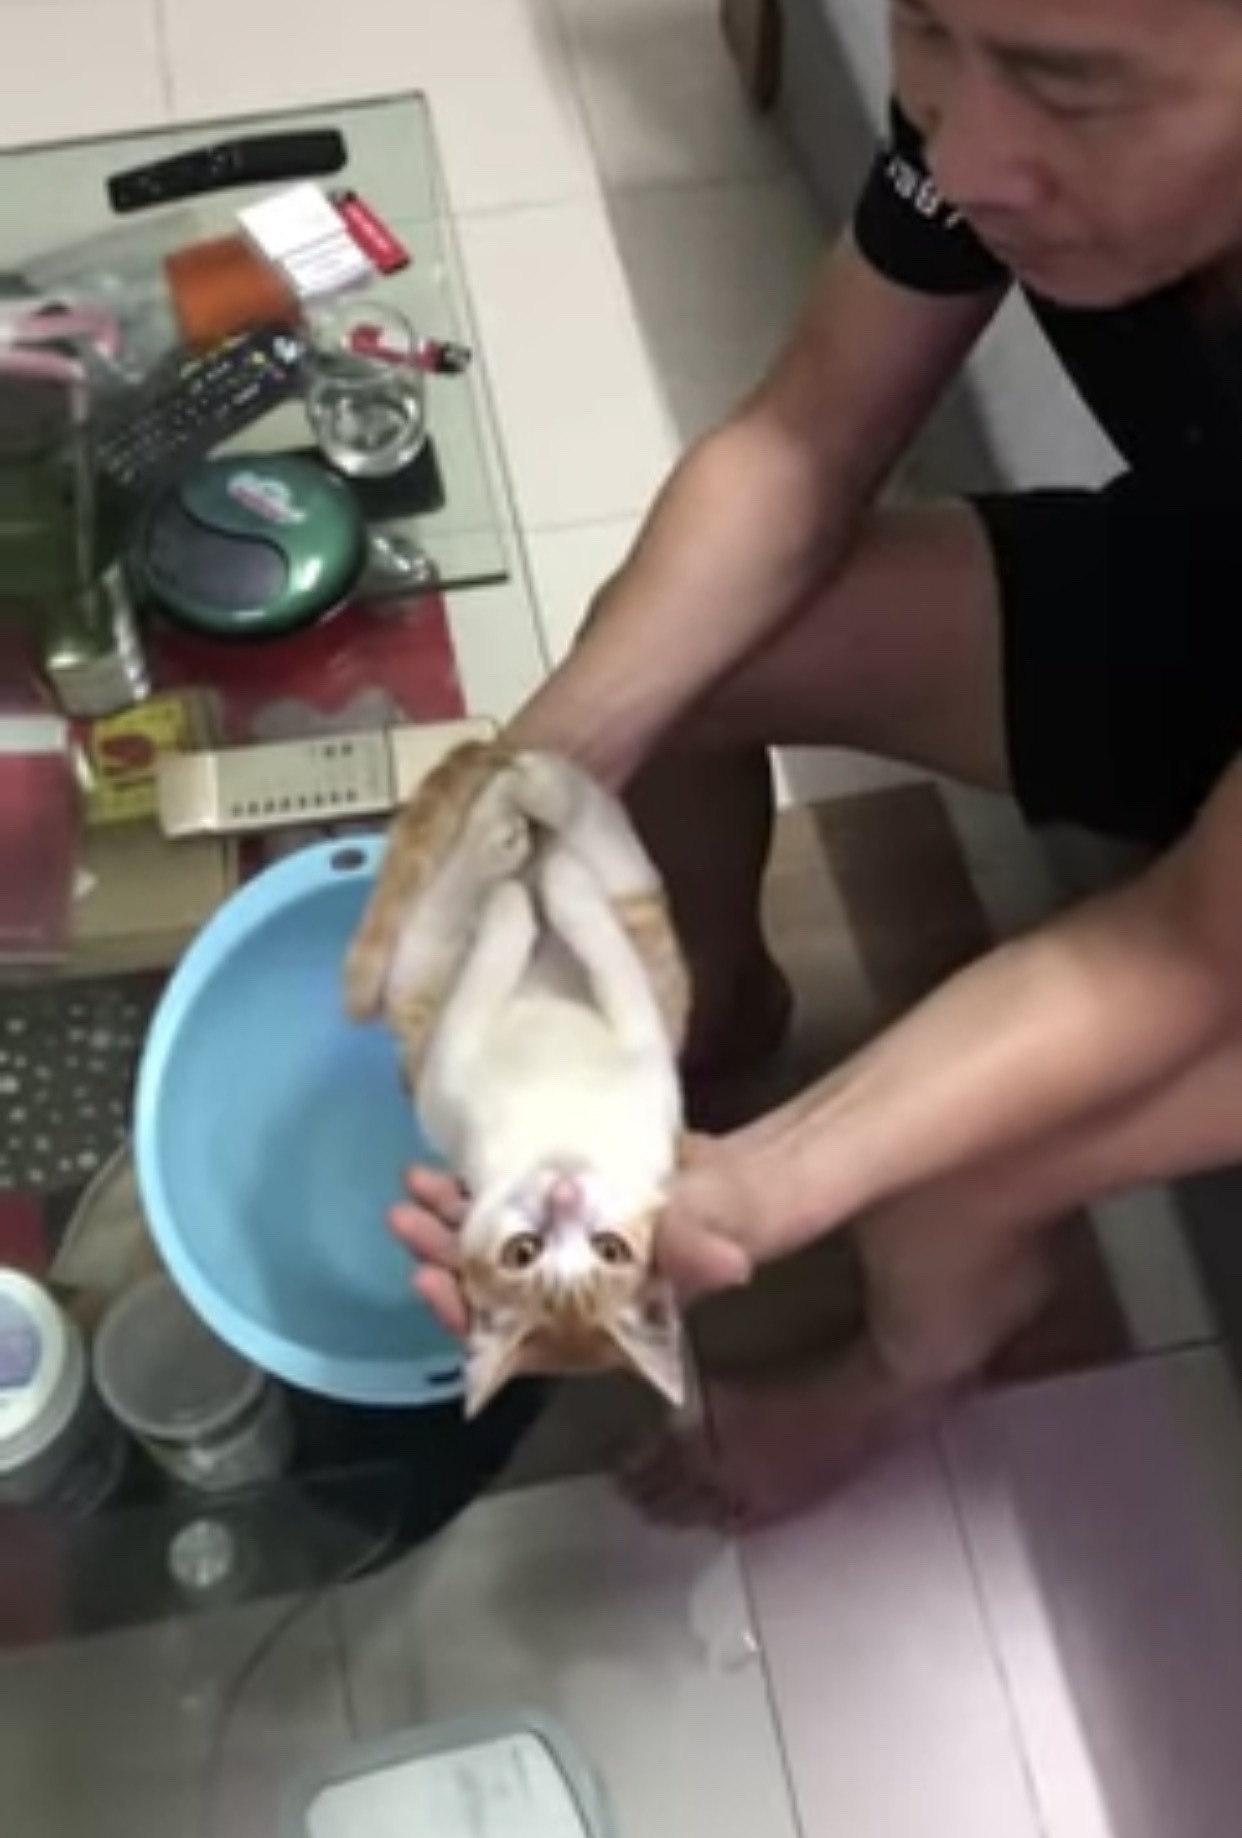 Đoạn clip hướng dẫn cách tắm cho trẻ sơ sinh với 'giáo cụ trực quan' là một chú mèo được chia sẻ rầm rộ trên mạng xã hội.